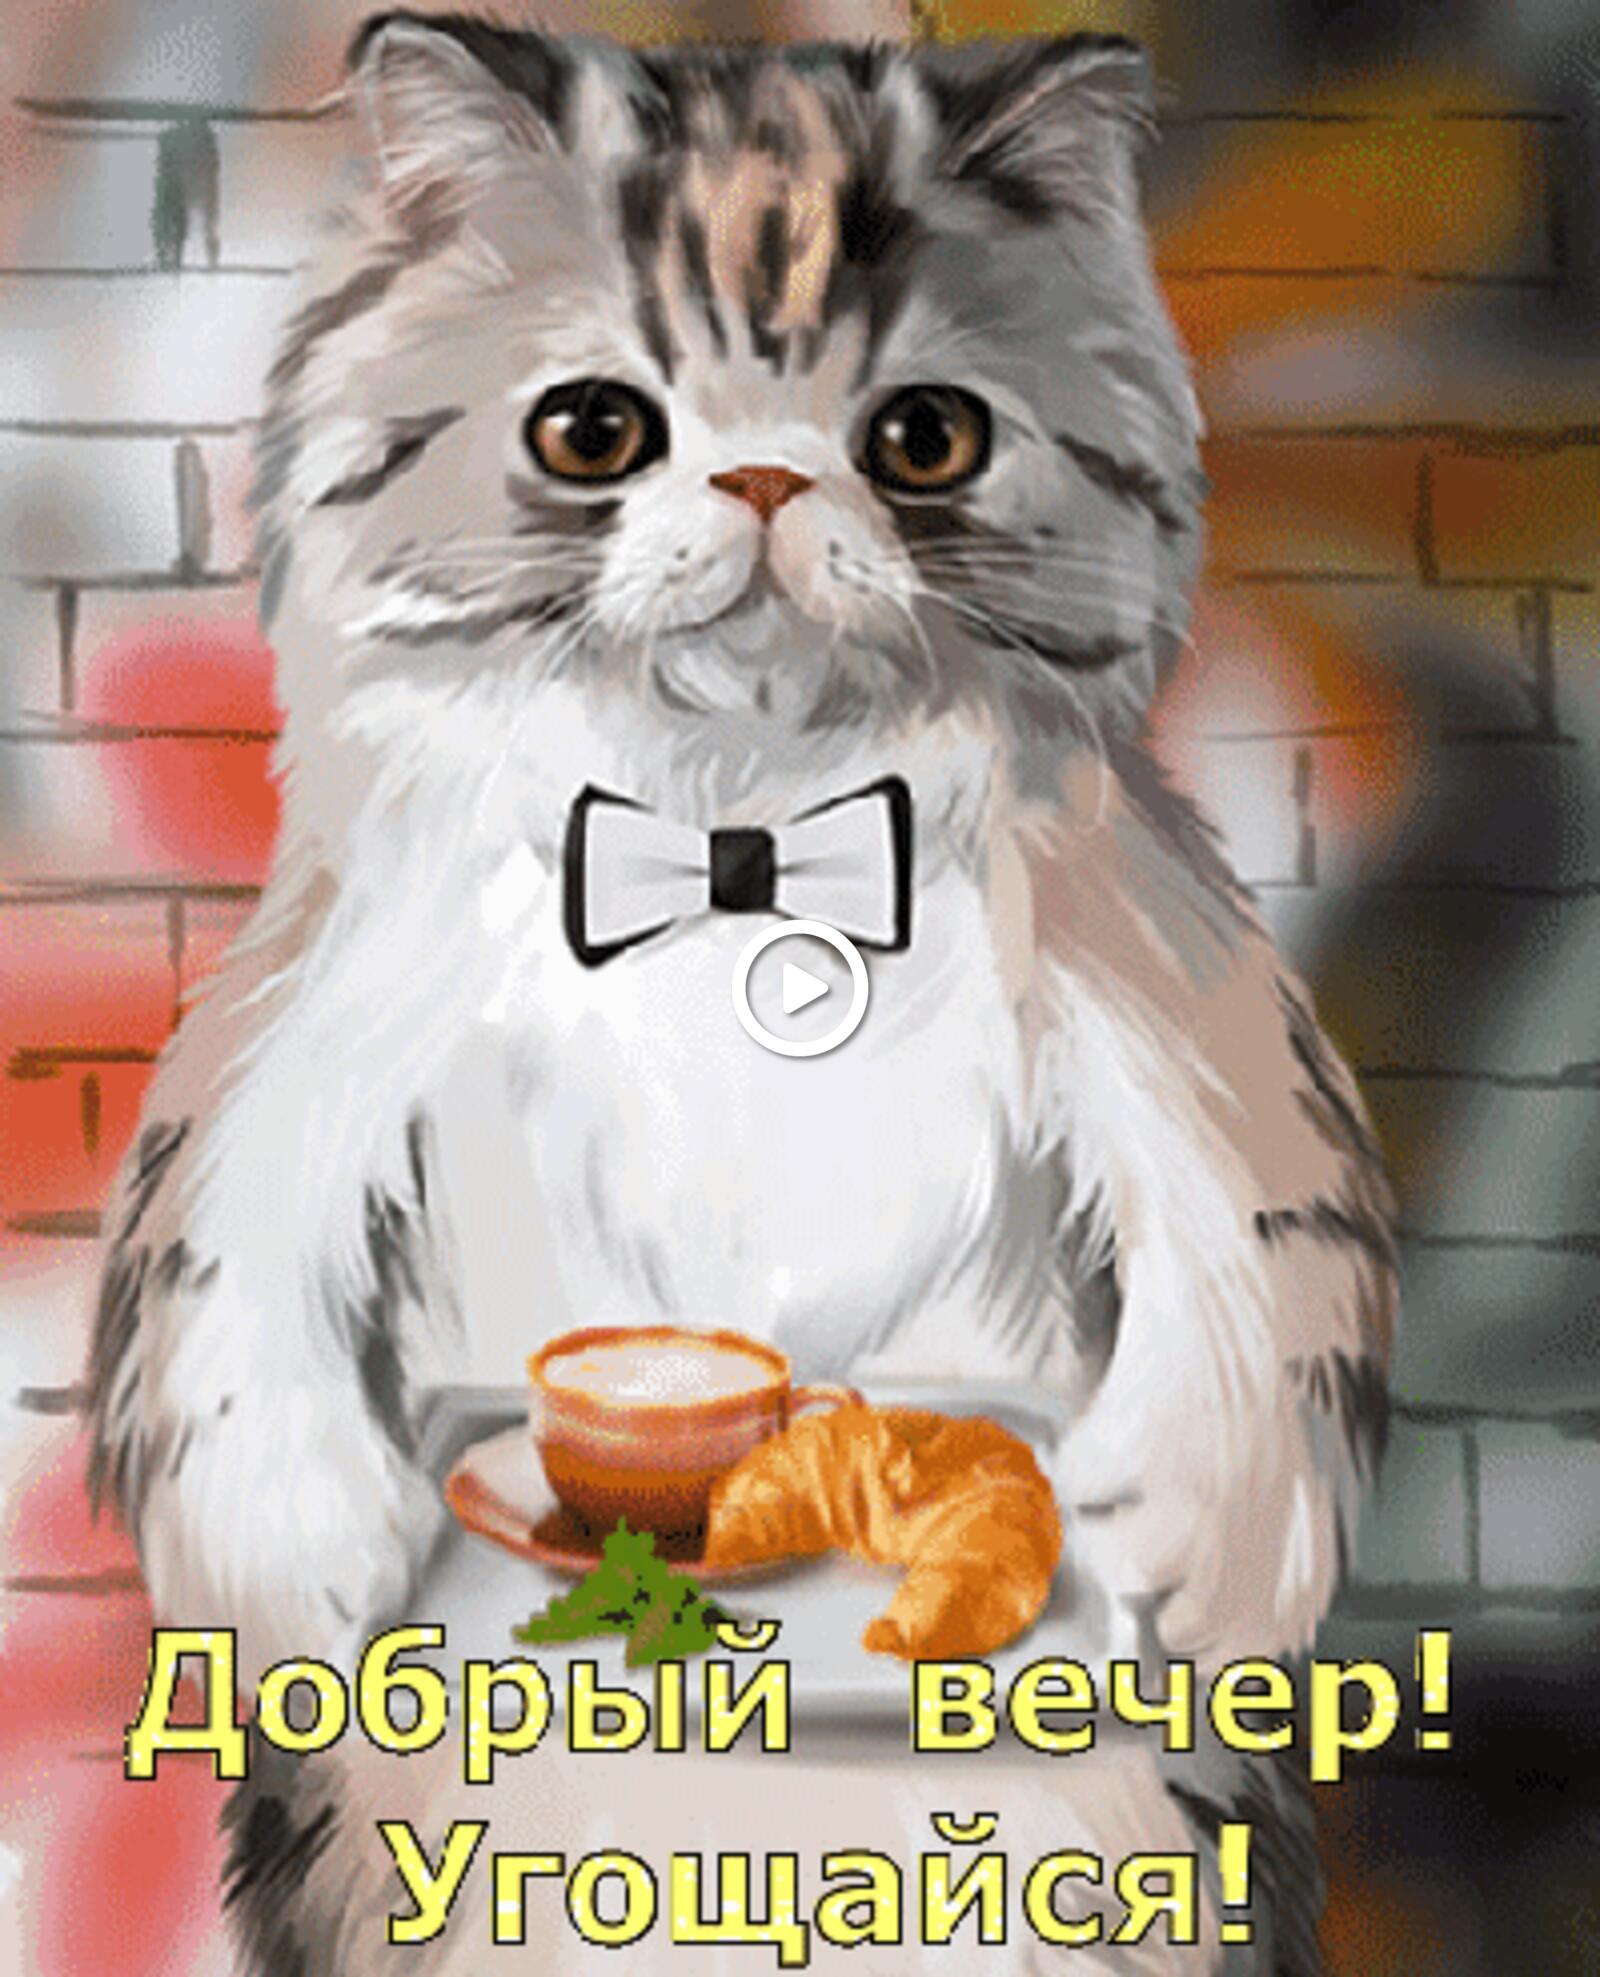 一张以晚上好 猫咪 早餐为主题的明信片